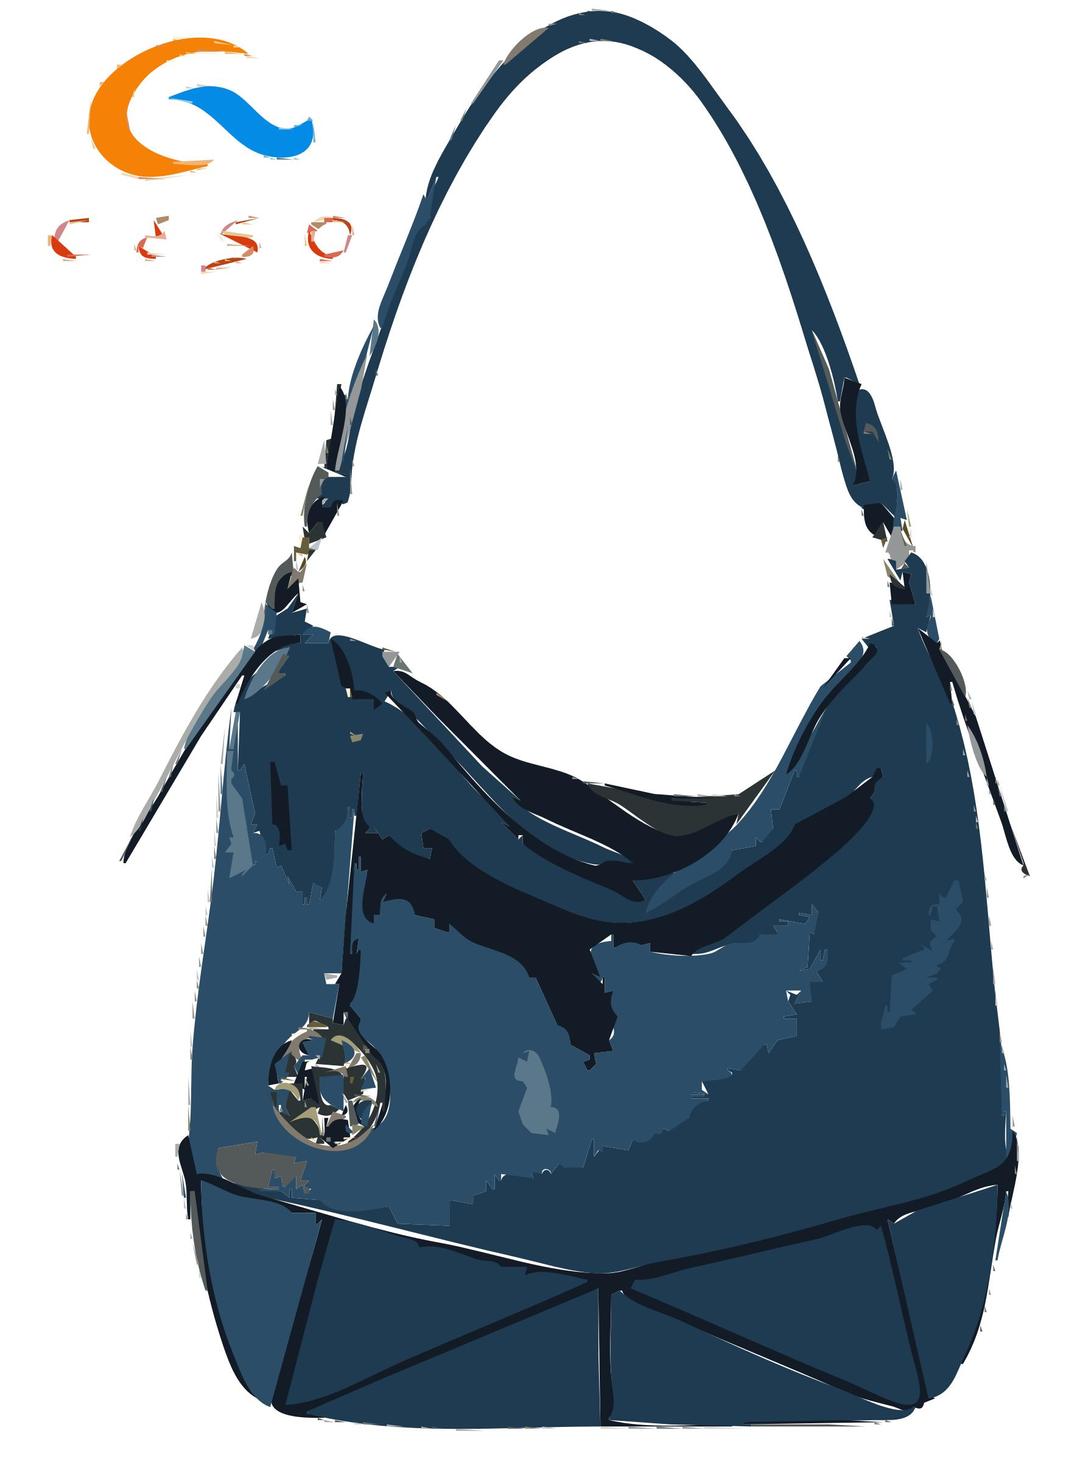 Blue handbag with logo png transparent